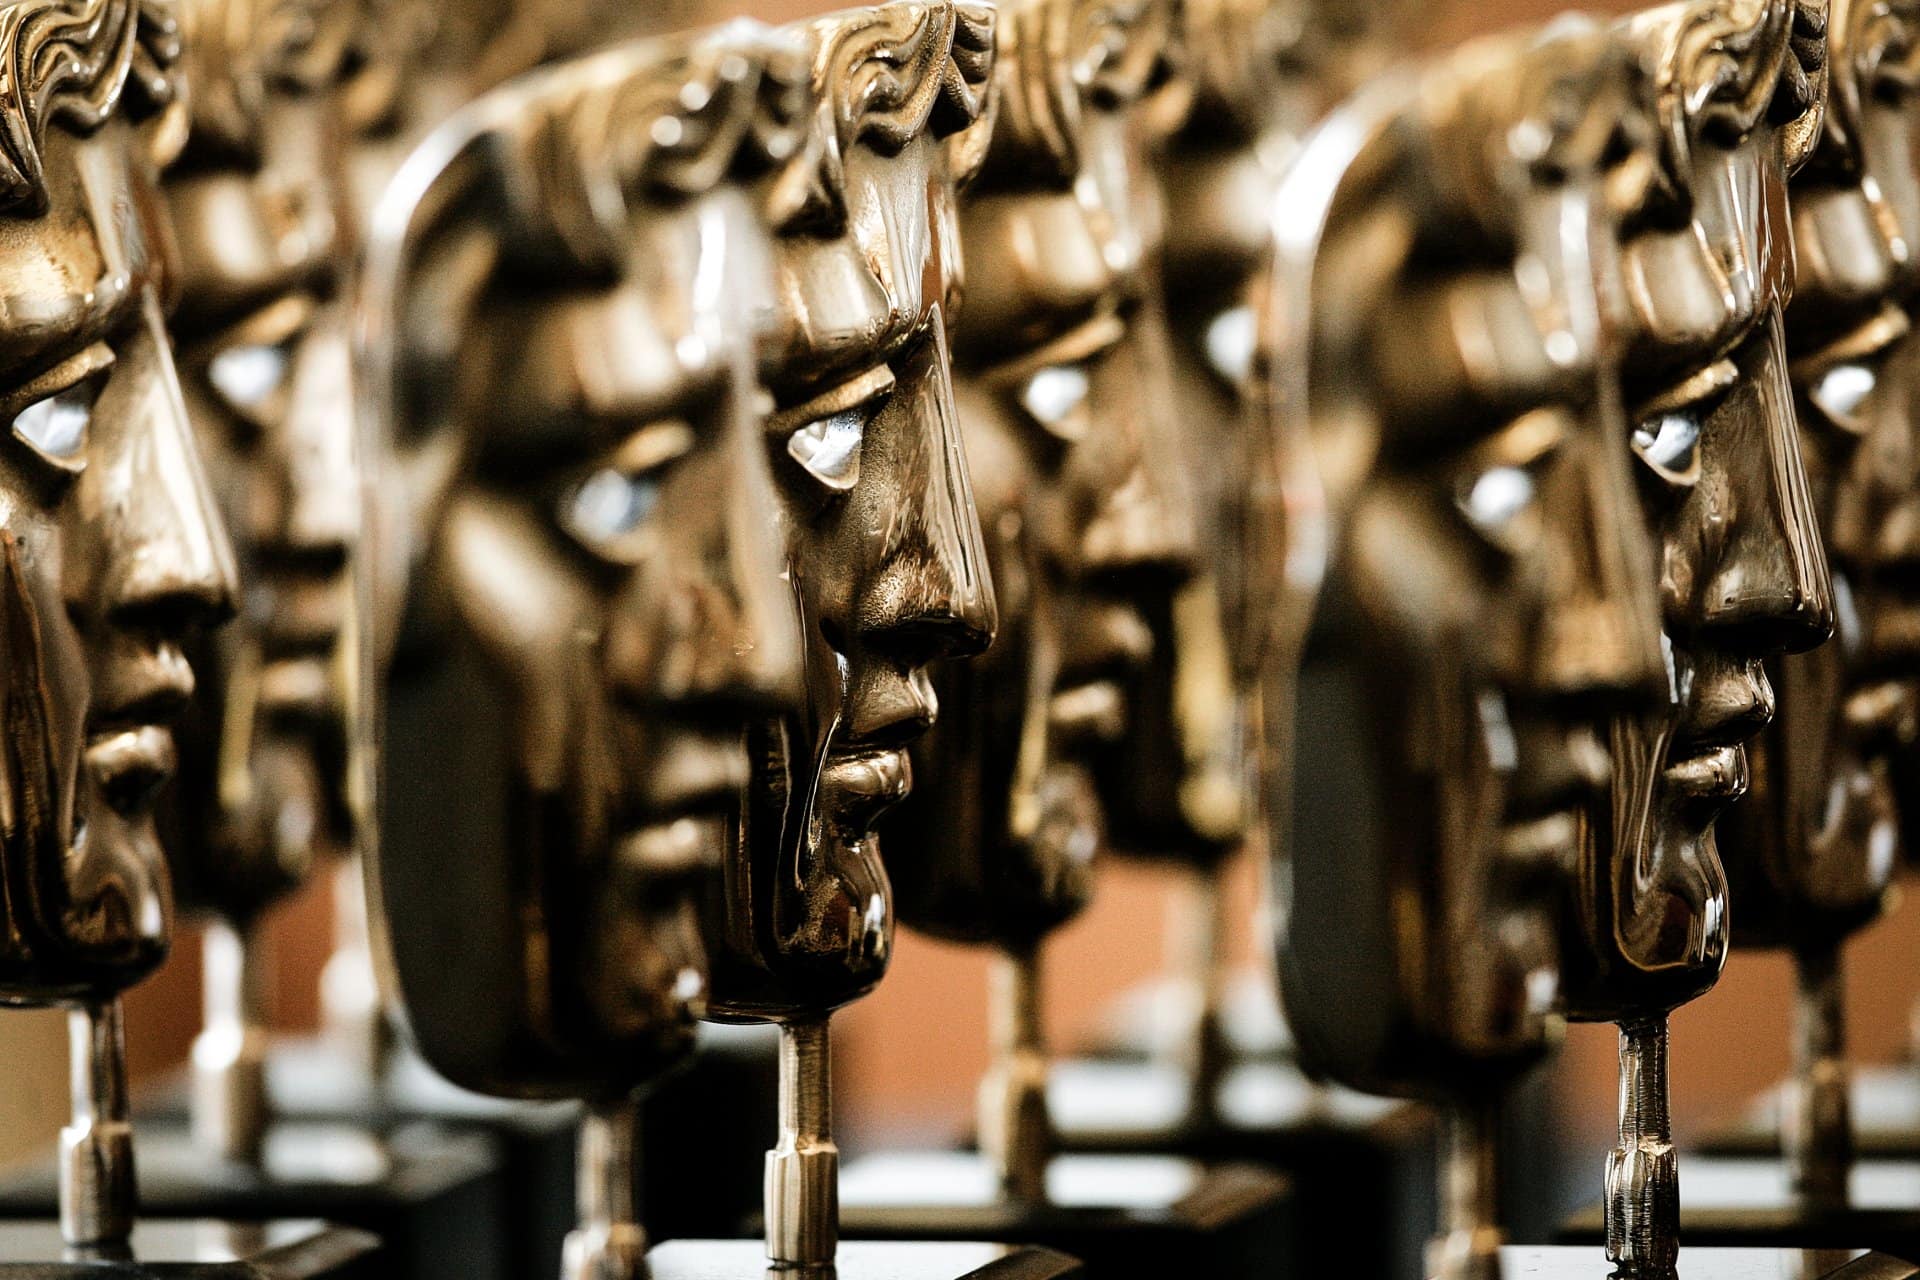 BAFTA award